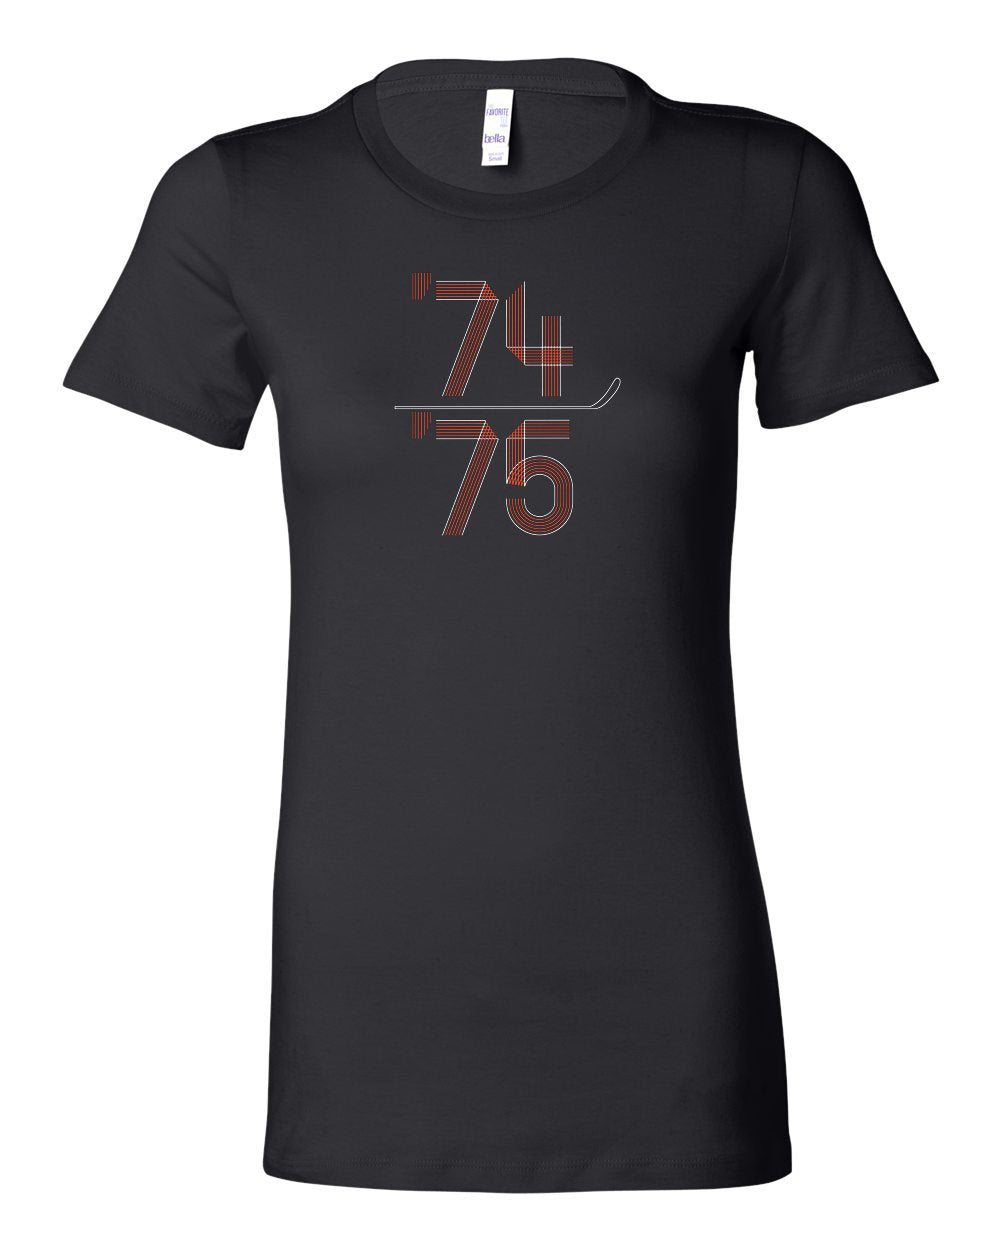 74-75 LADIES Junior-Fit T-Shirt